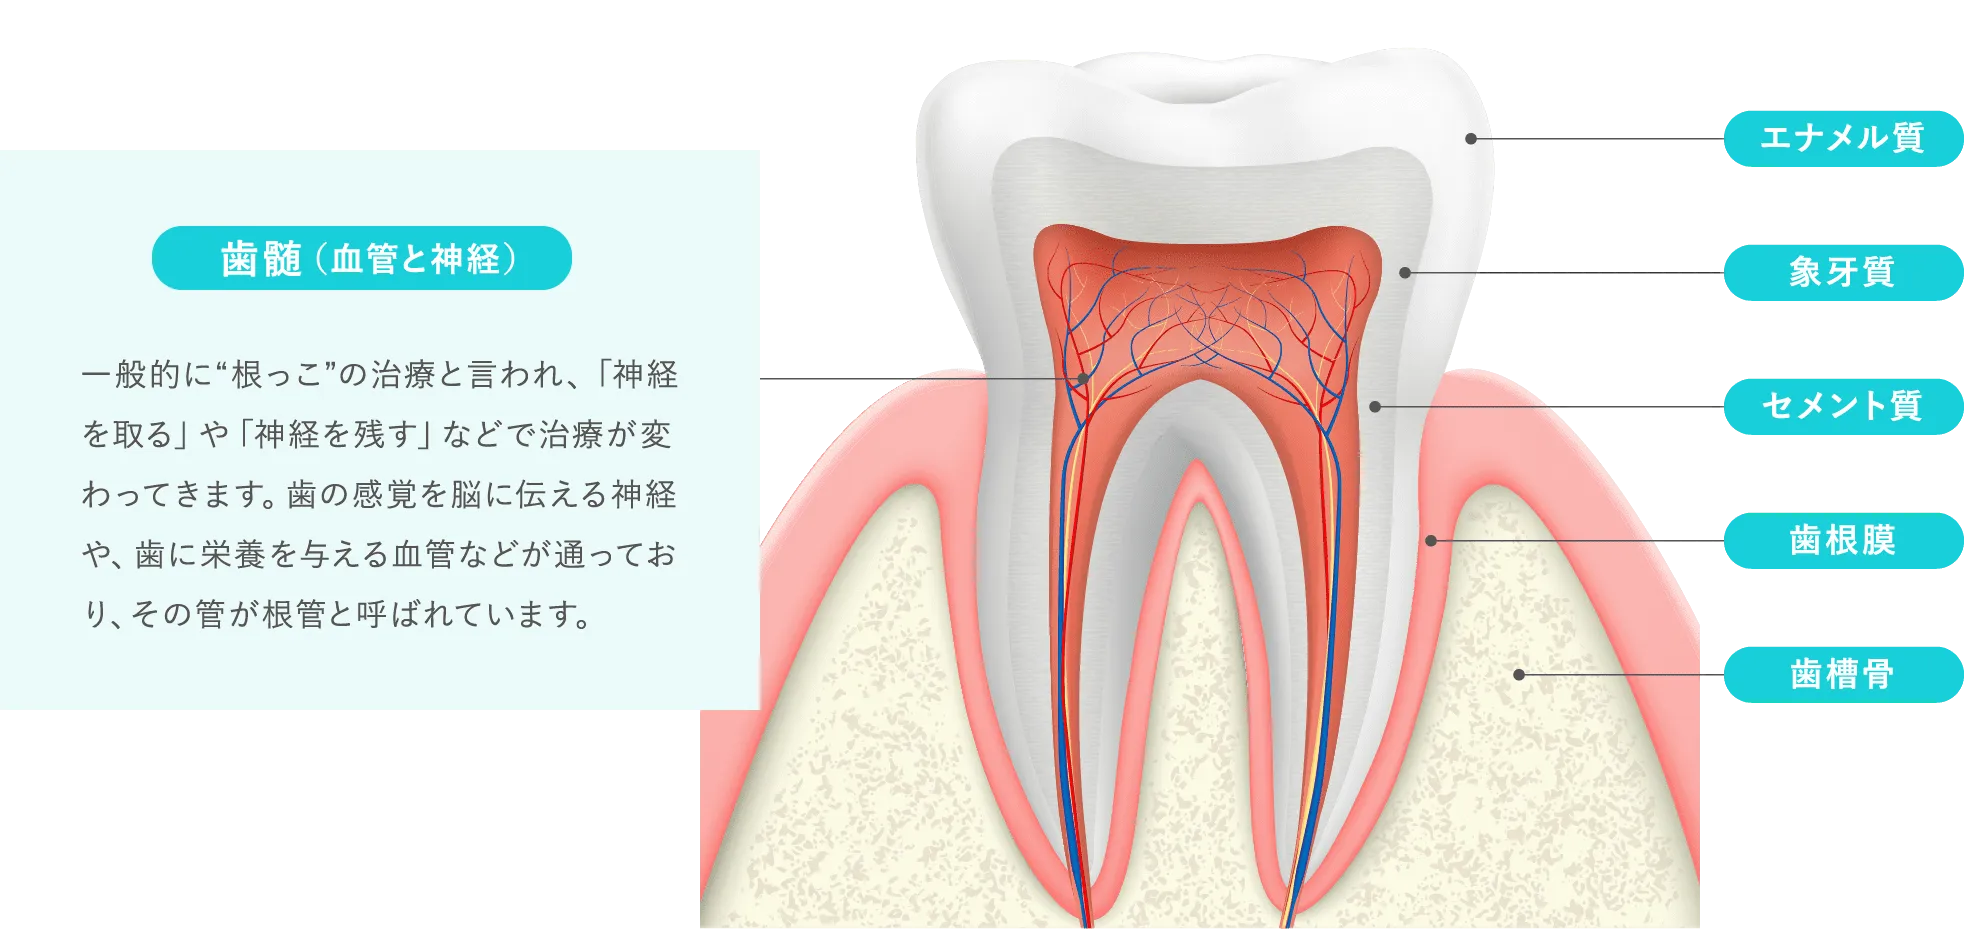 歯を残す歯内療法